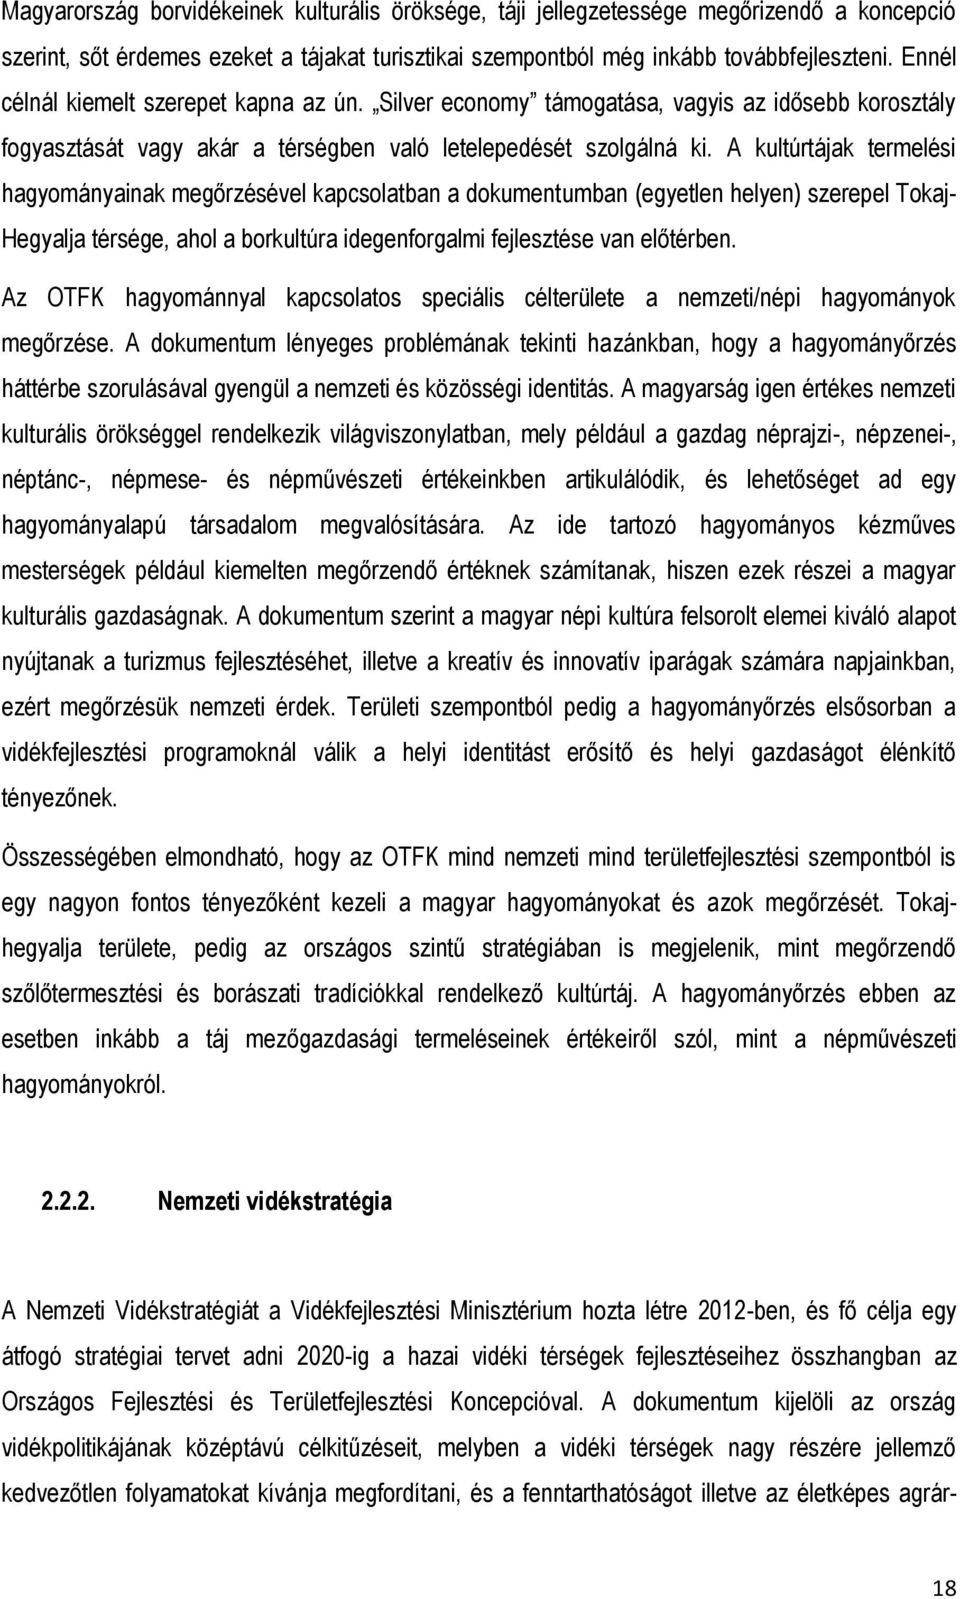 A kultúrtájak termelési hagyományainak megőrzésével kapcsolatban a dokumentumban (egyetlen helyen) szerepel Tokaj- Hegyalja térsége, ahol a borkultúra idegenforgalmi fejlesztése van előtérben.